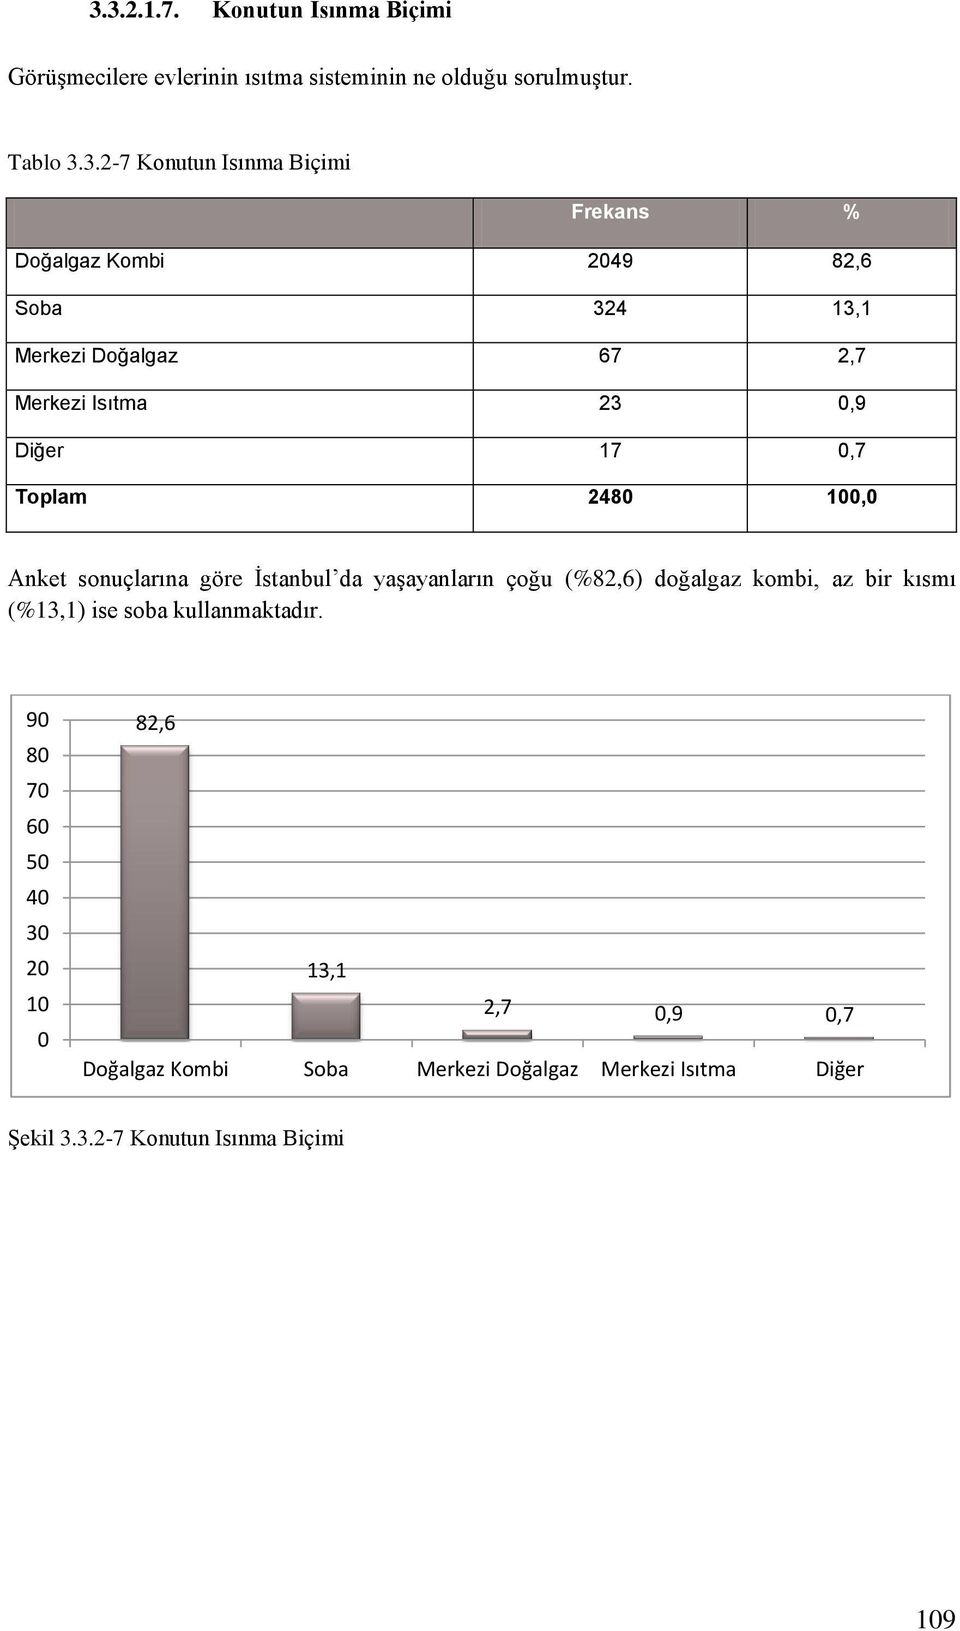 Anket sonuçlarına göre İstanbul da yaşayanların çoğu (%82,6) doğalgaz kombi, az bir kısmı (%13,1) ise soba kullanmaktadır.